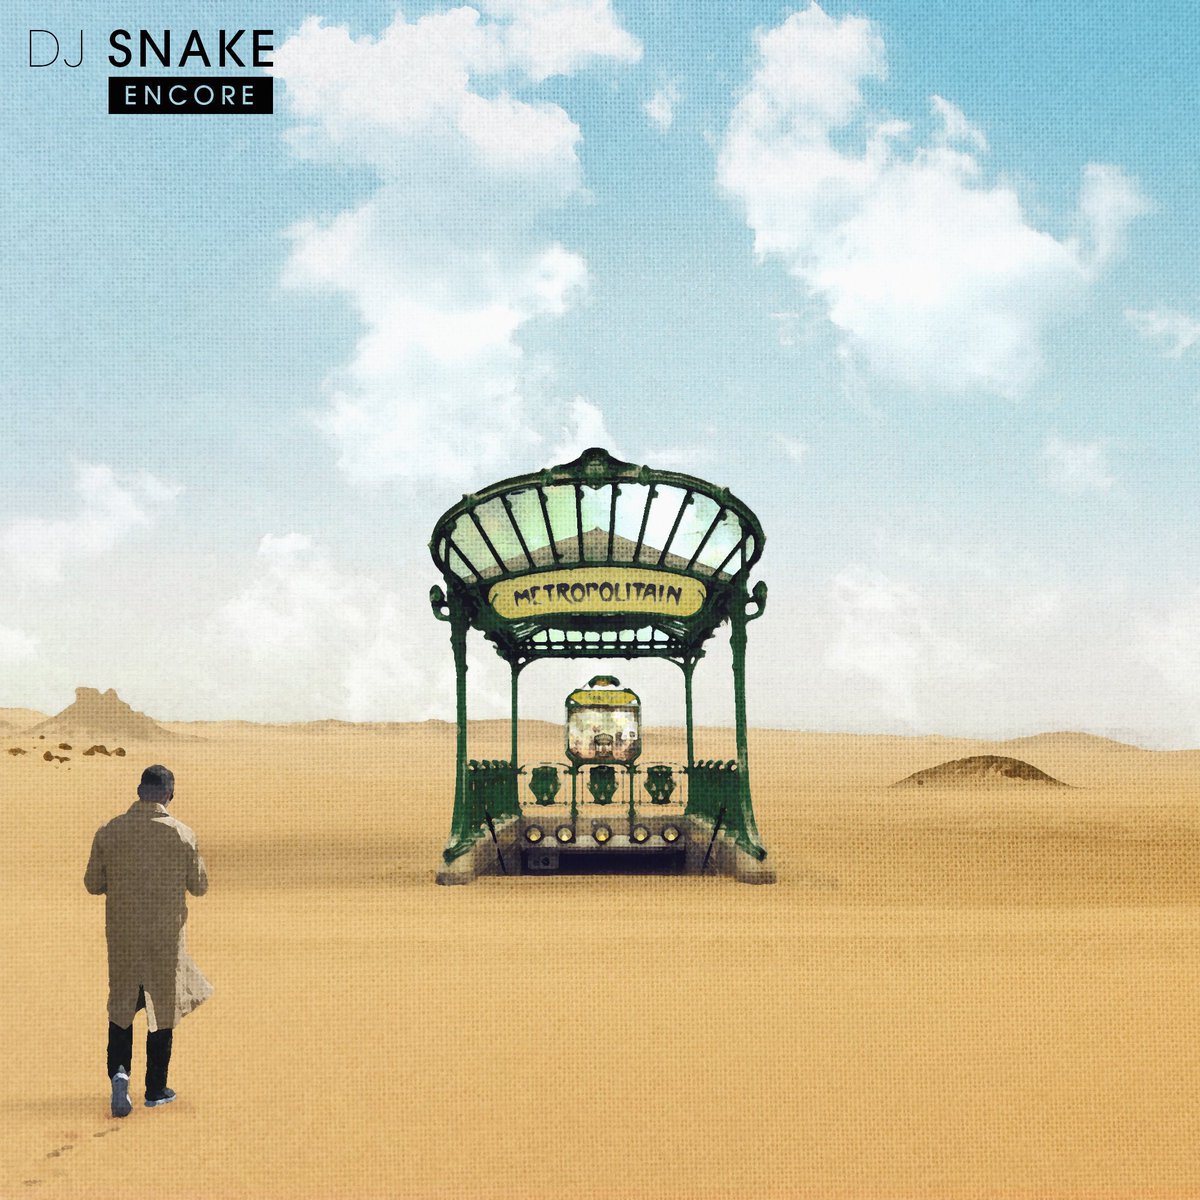 DJ Snake — Encore cover artwork